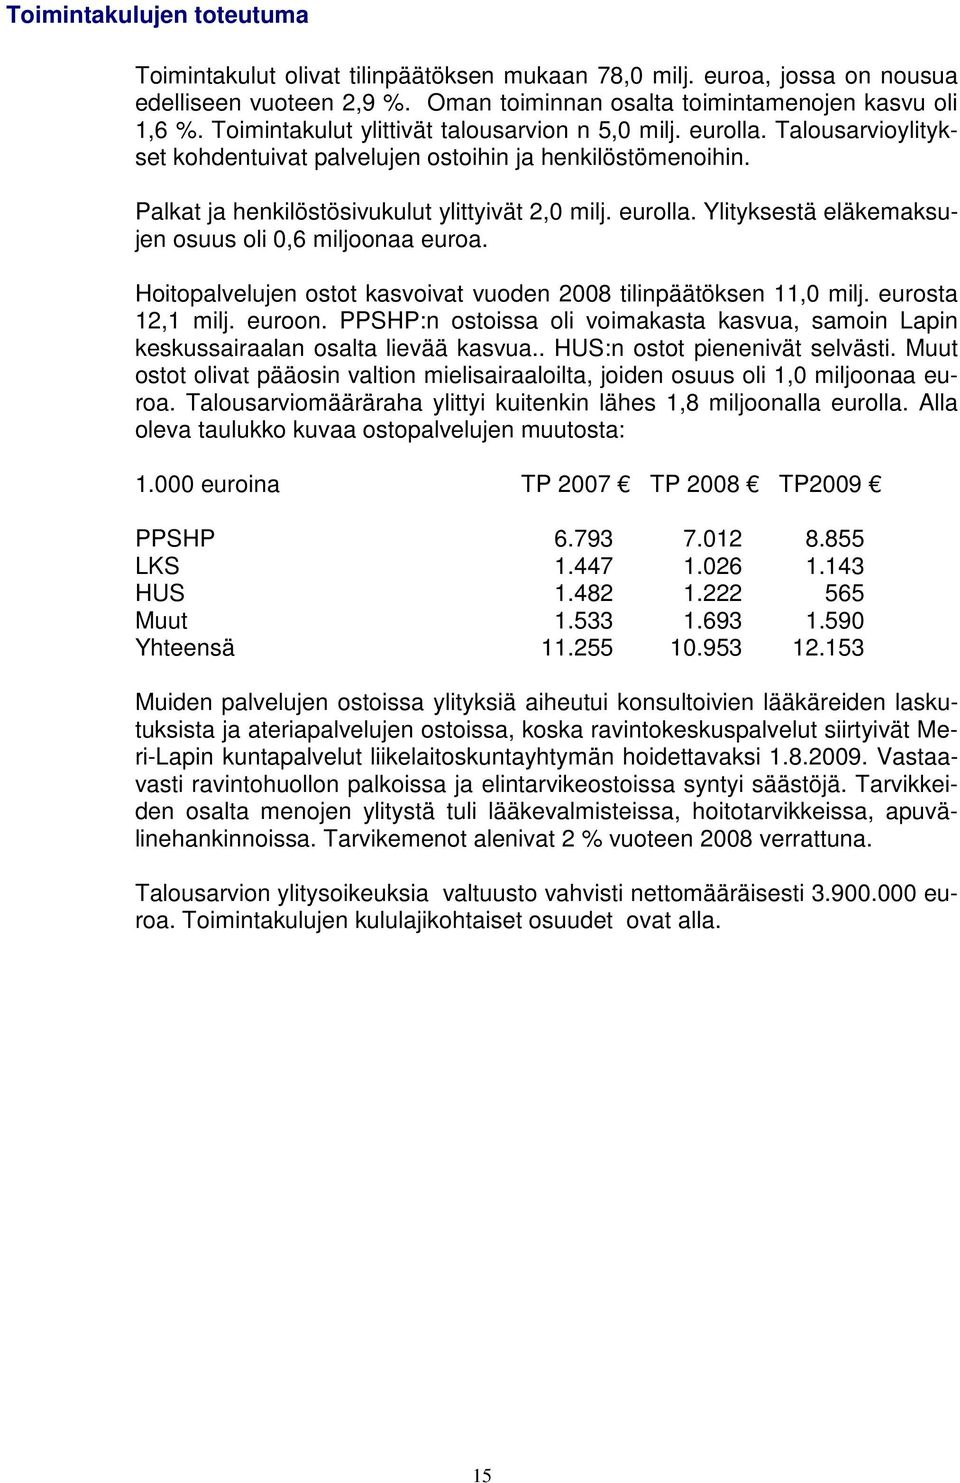 Hoitopalvelujen ostot kasvoivat vuoden 2008 tilinpäätöksen 11,0 milj. eurosta 12,1 milj. euroon. PPSHP:n ostoissa oli voimakasta kasvua, samoin Lapin keskussairaalan osalta lievää kasvua.